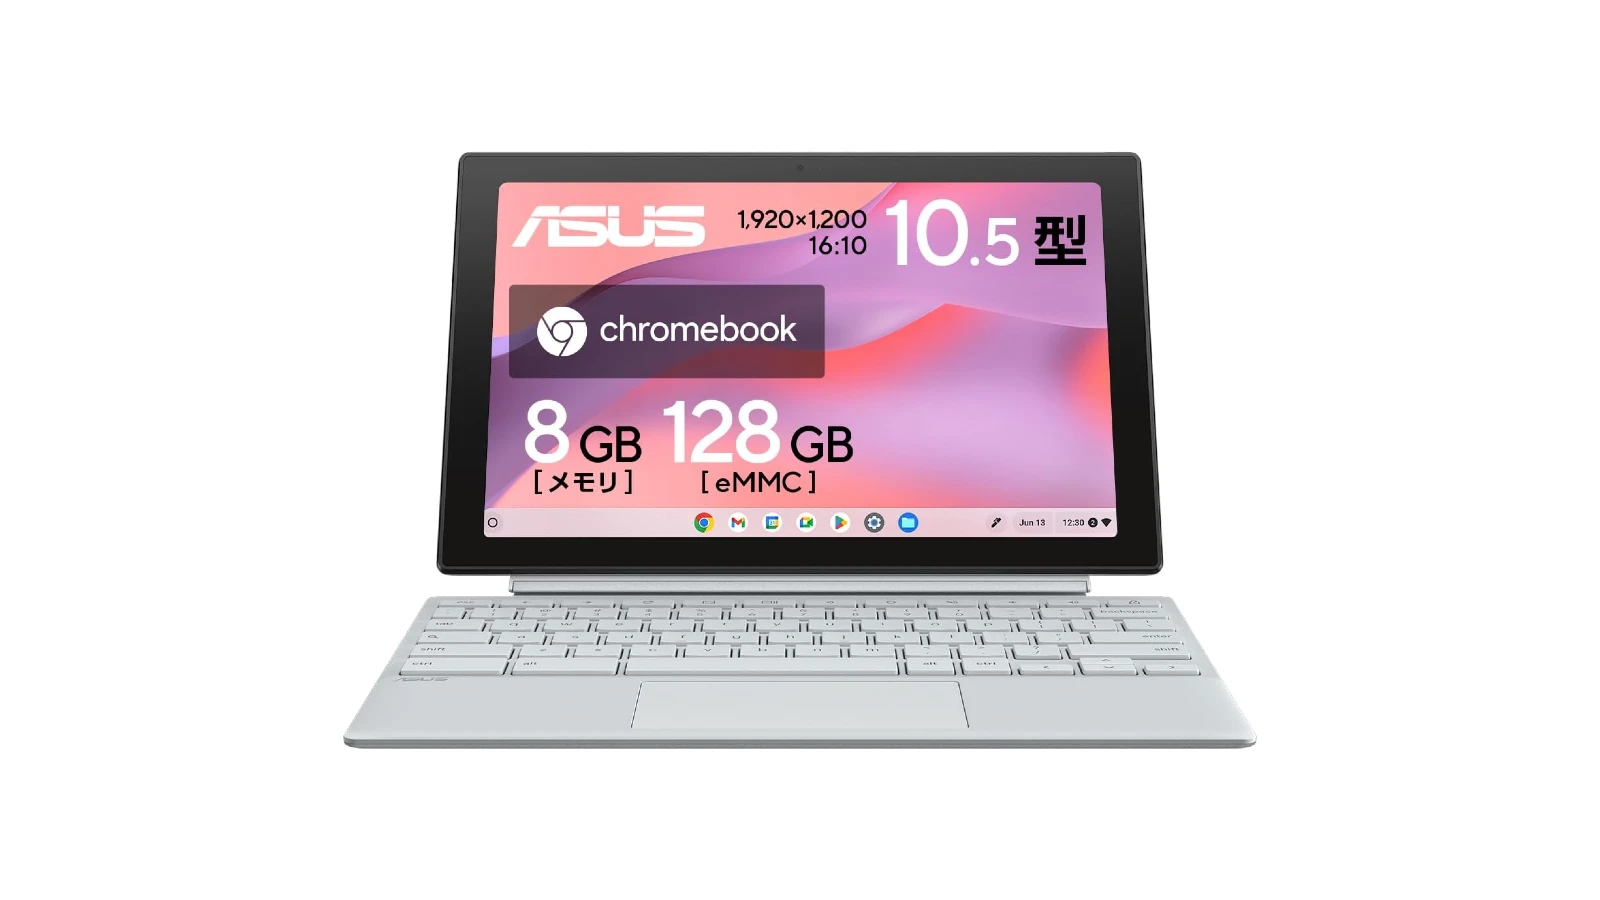 ASUS Chromebook Detachable CM30 CM3001 の Amazon の製品画像